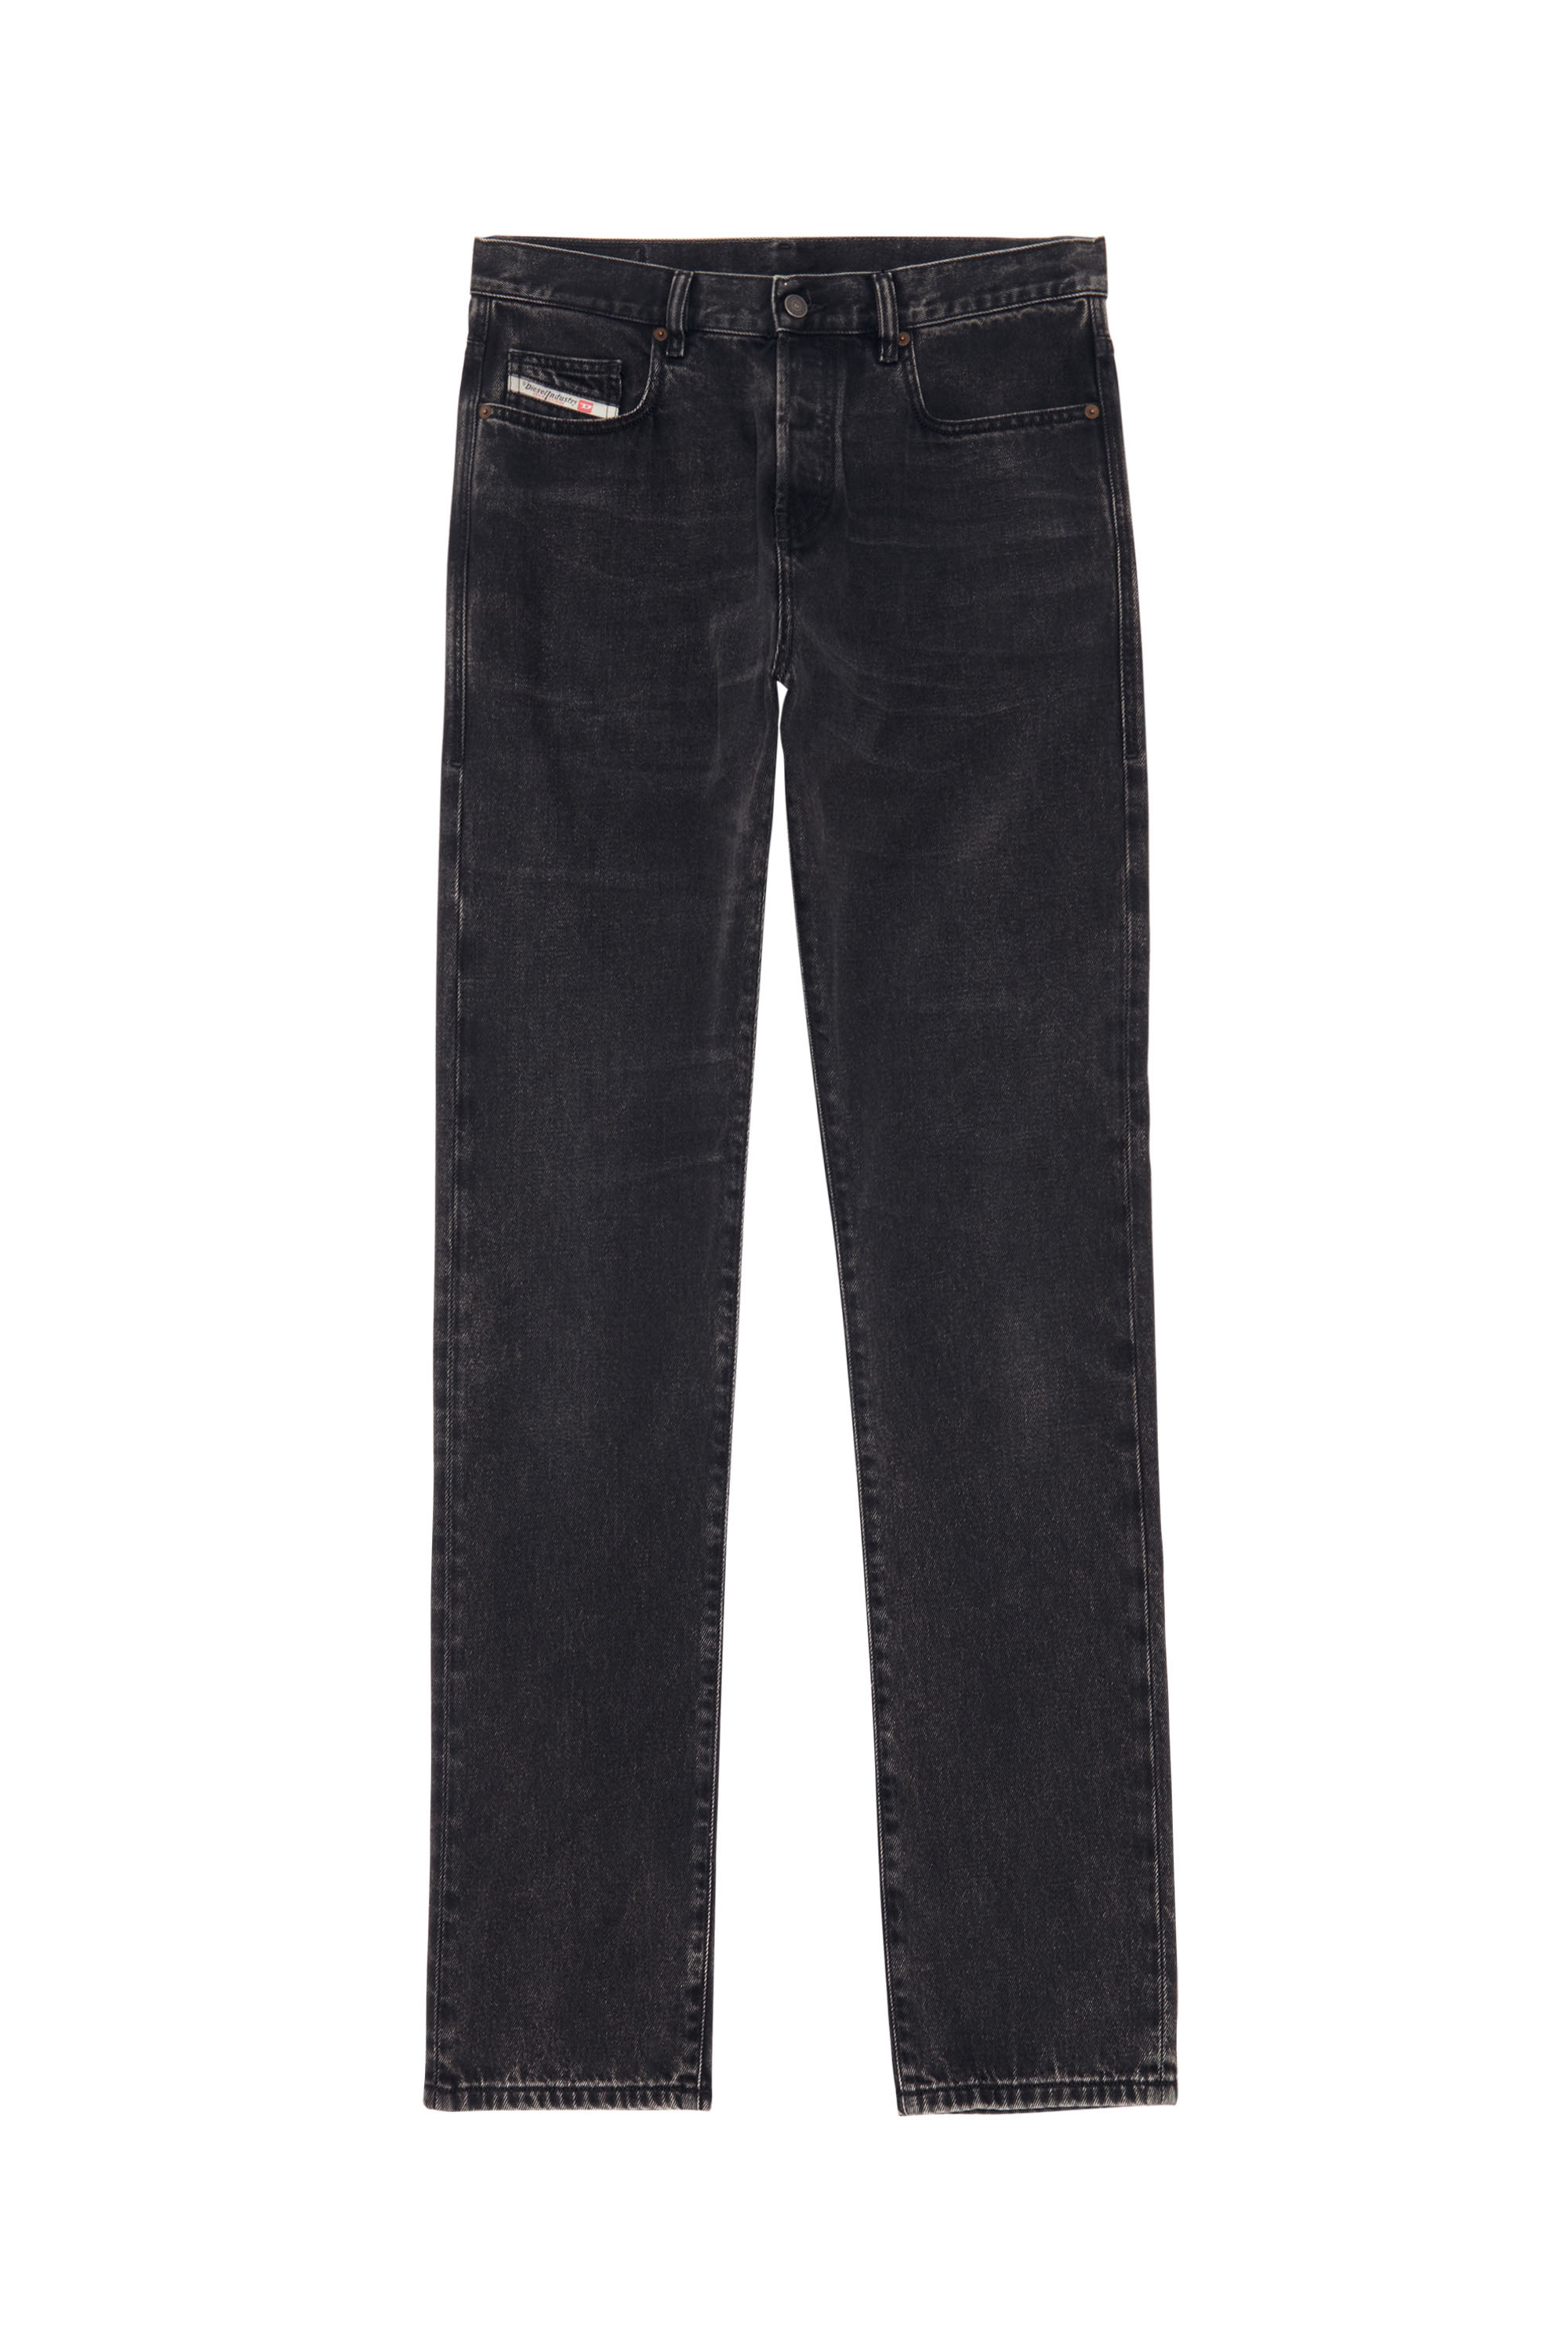 2015 Babhila Z870G Skinny Jeans, Black/Dark grey